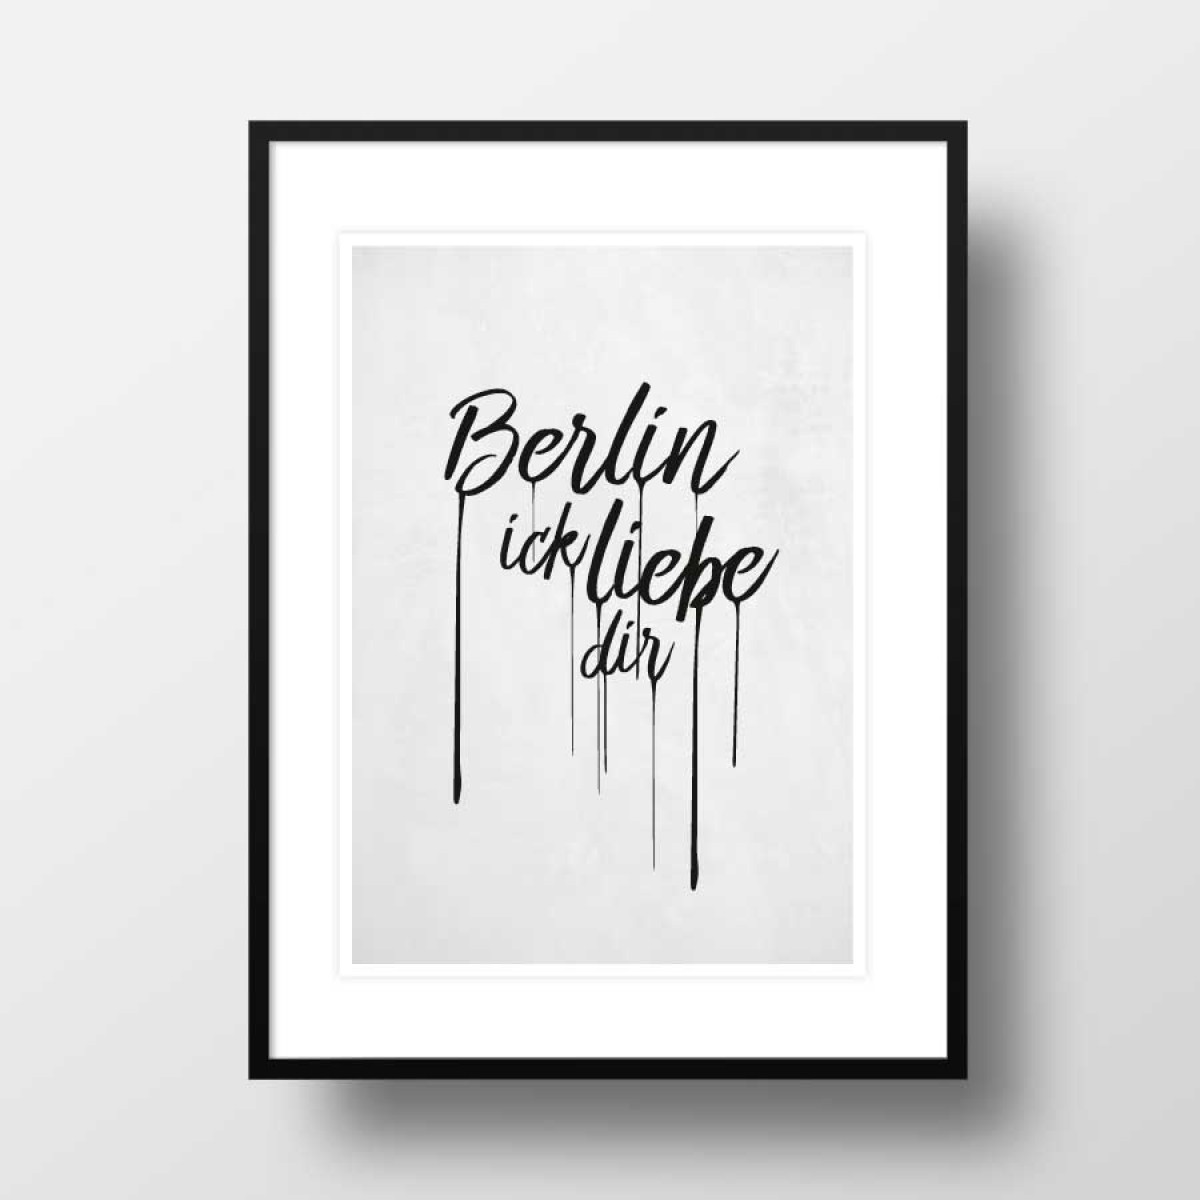 Amy & Kurt Berlin A3 Artprint "Berlin ick liebe dir"